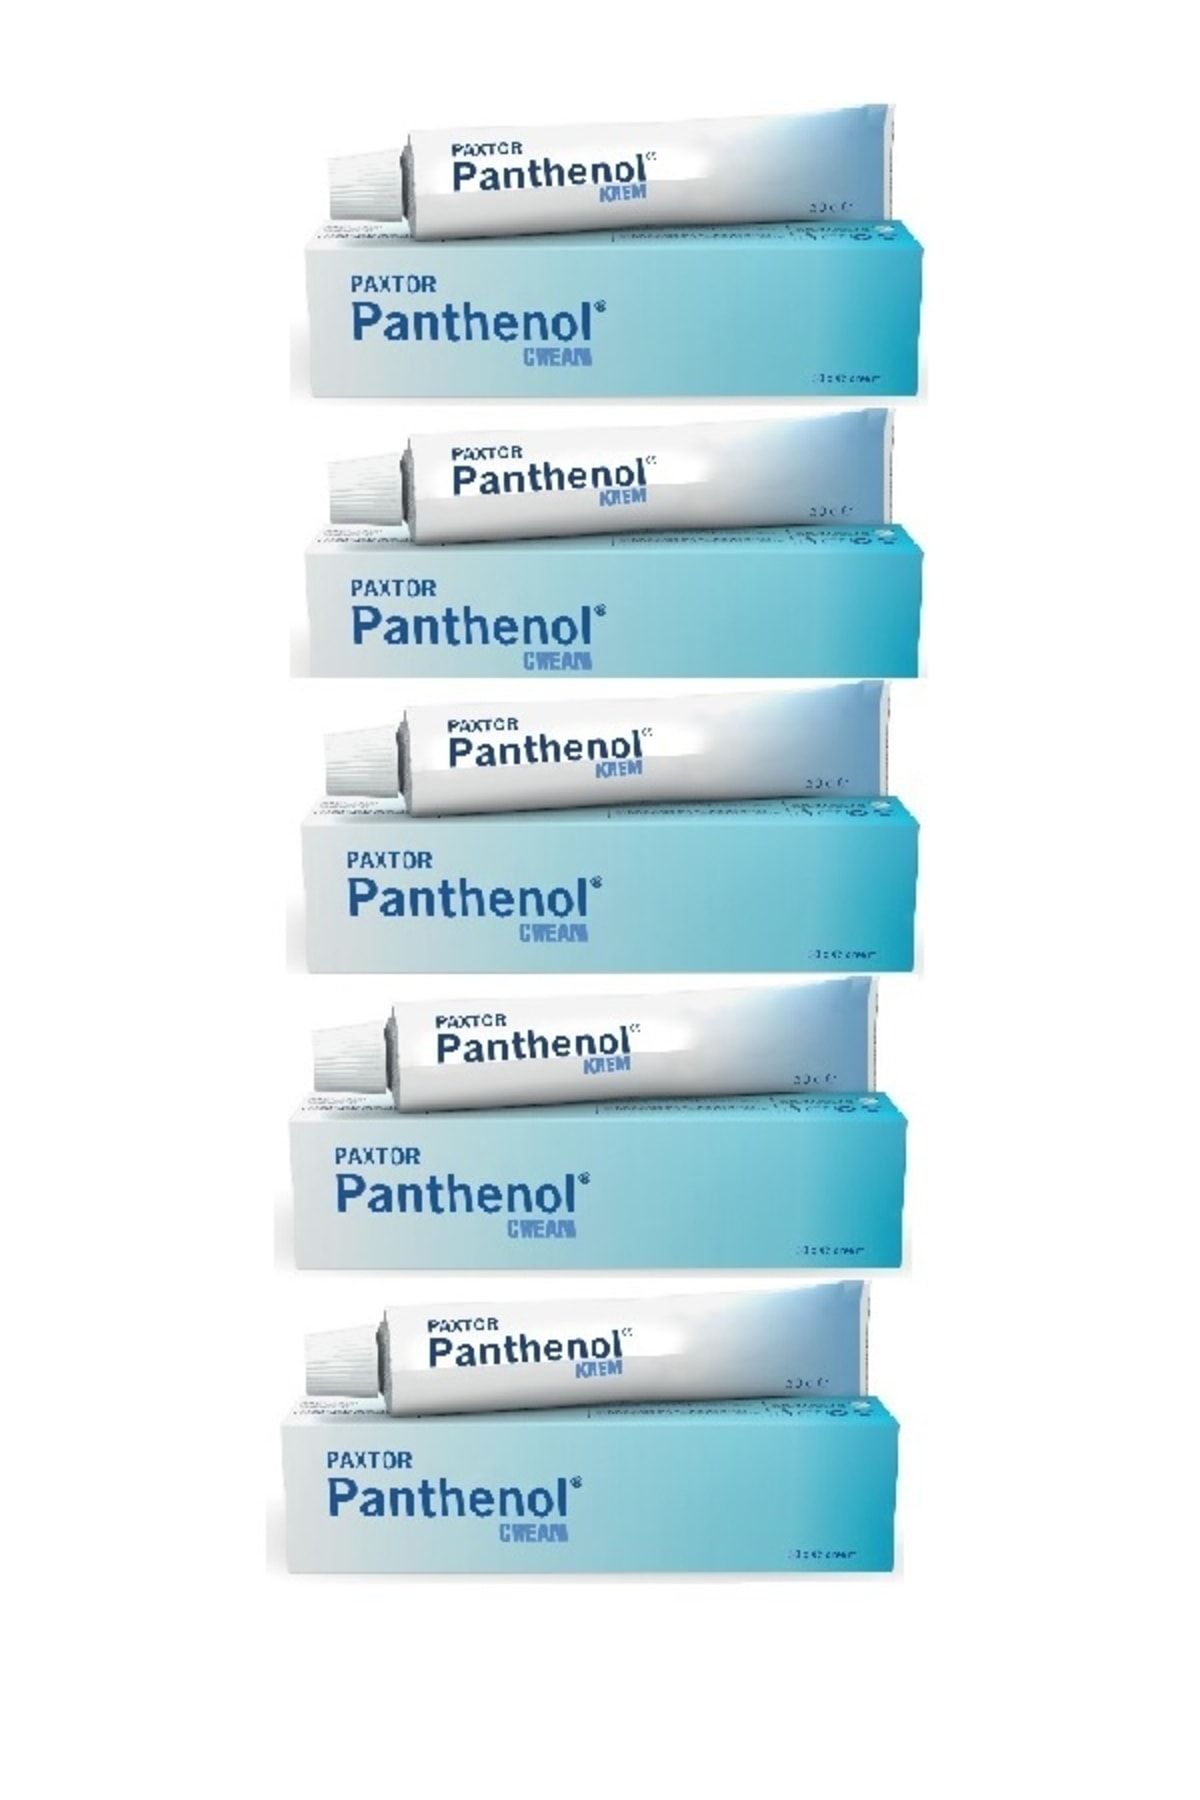 Panthenol Paxtor Krem 30 Gr* 5 Adet